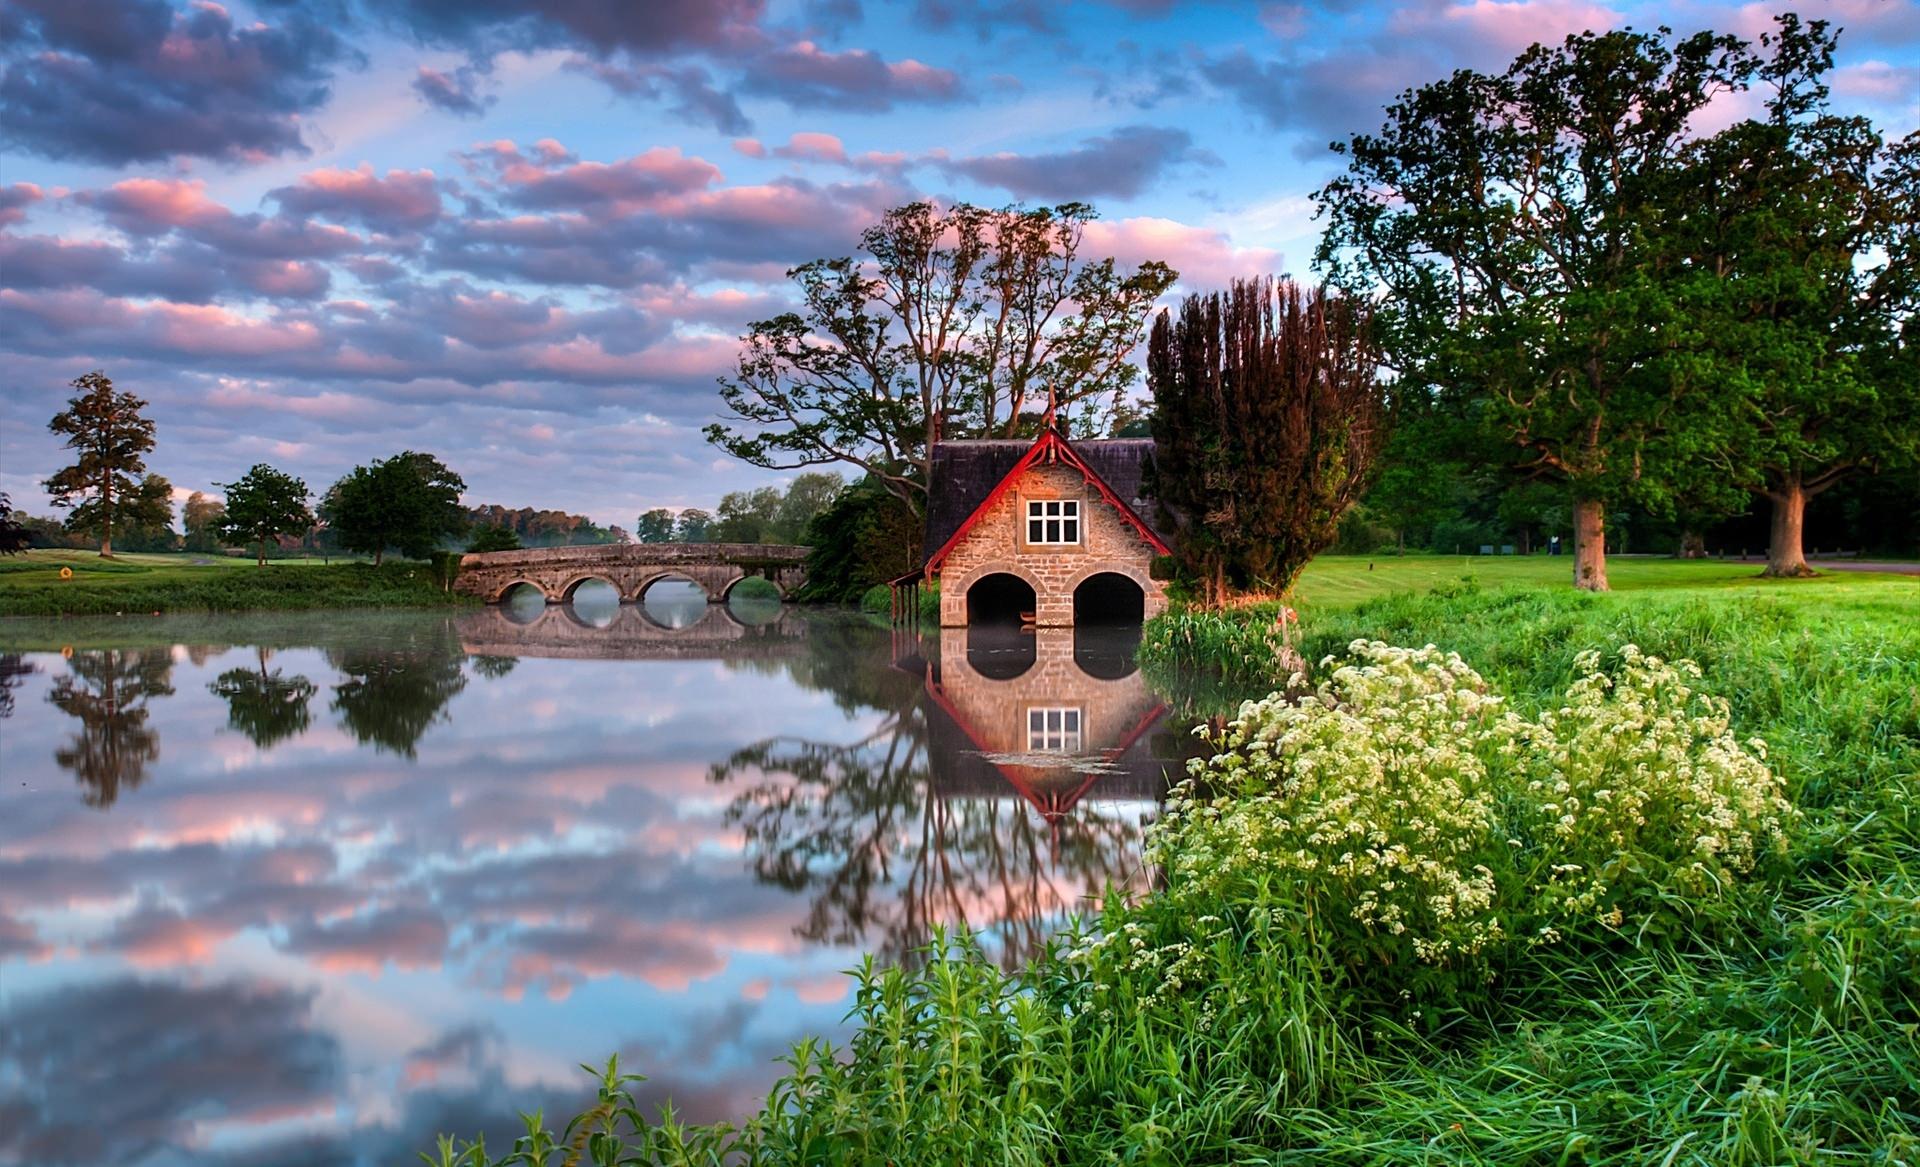 man made, boathouse, bridge, flower, house, lake, reflection, shed, tree